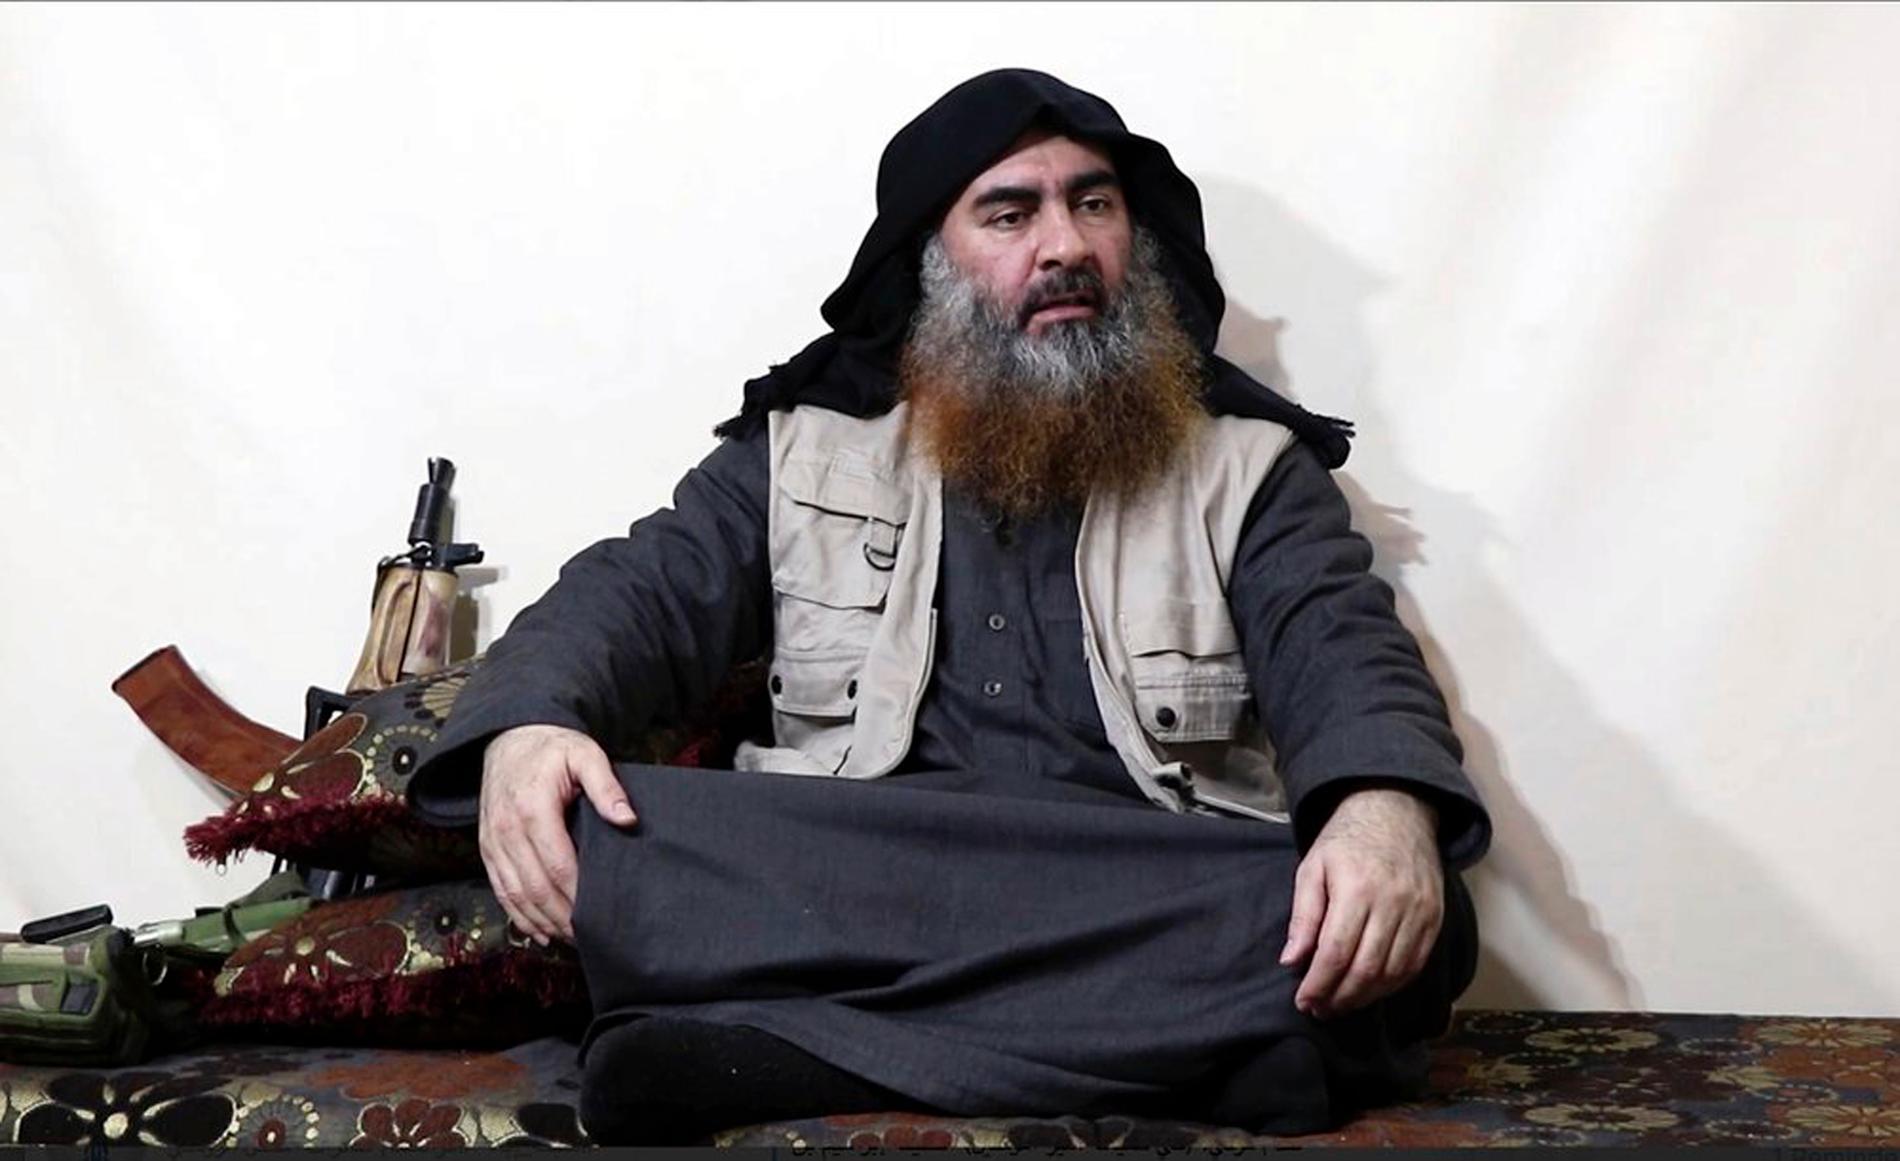 IS ledare Abu Bakr al-Baghdadi uppges vara död. Här en av de få bilder som finns på honom, ur en video från tidigare i år.